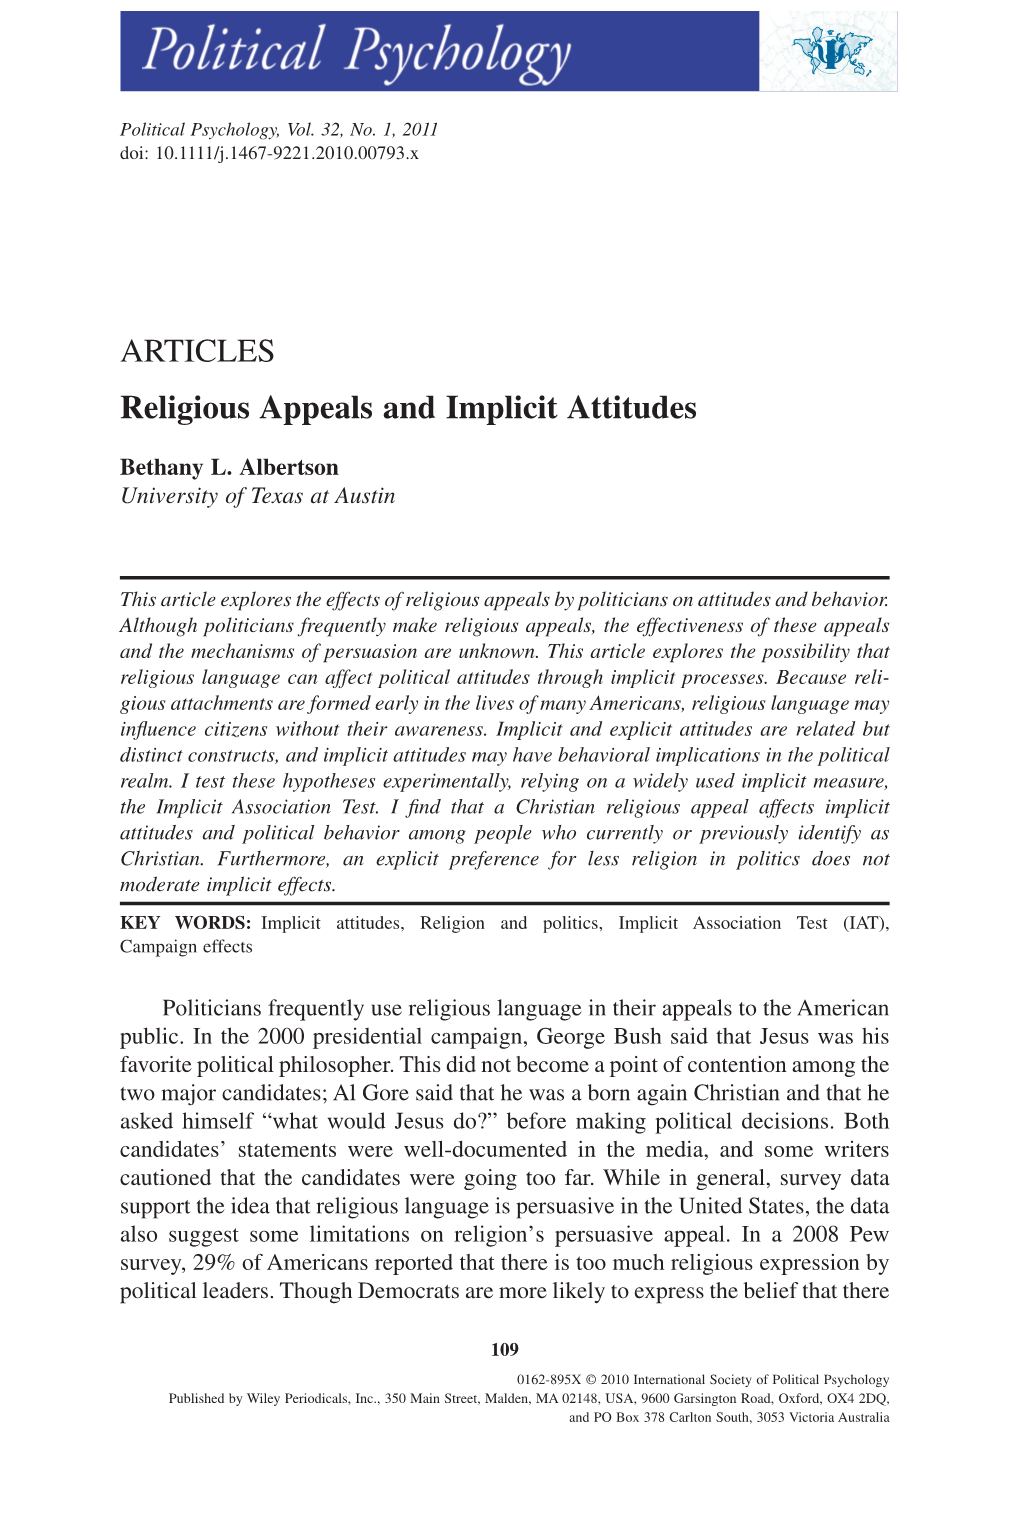 Religious Appeals and Implicit Attitudespops 793 109..130